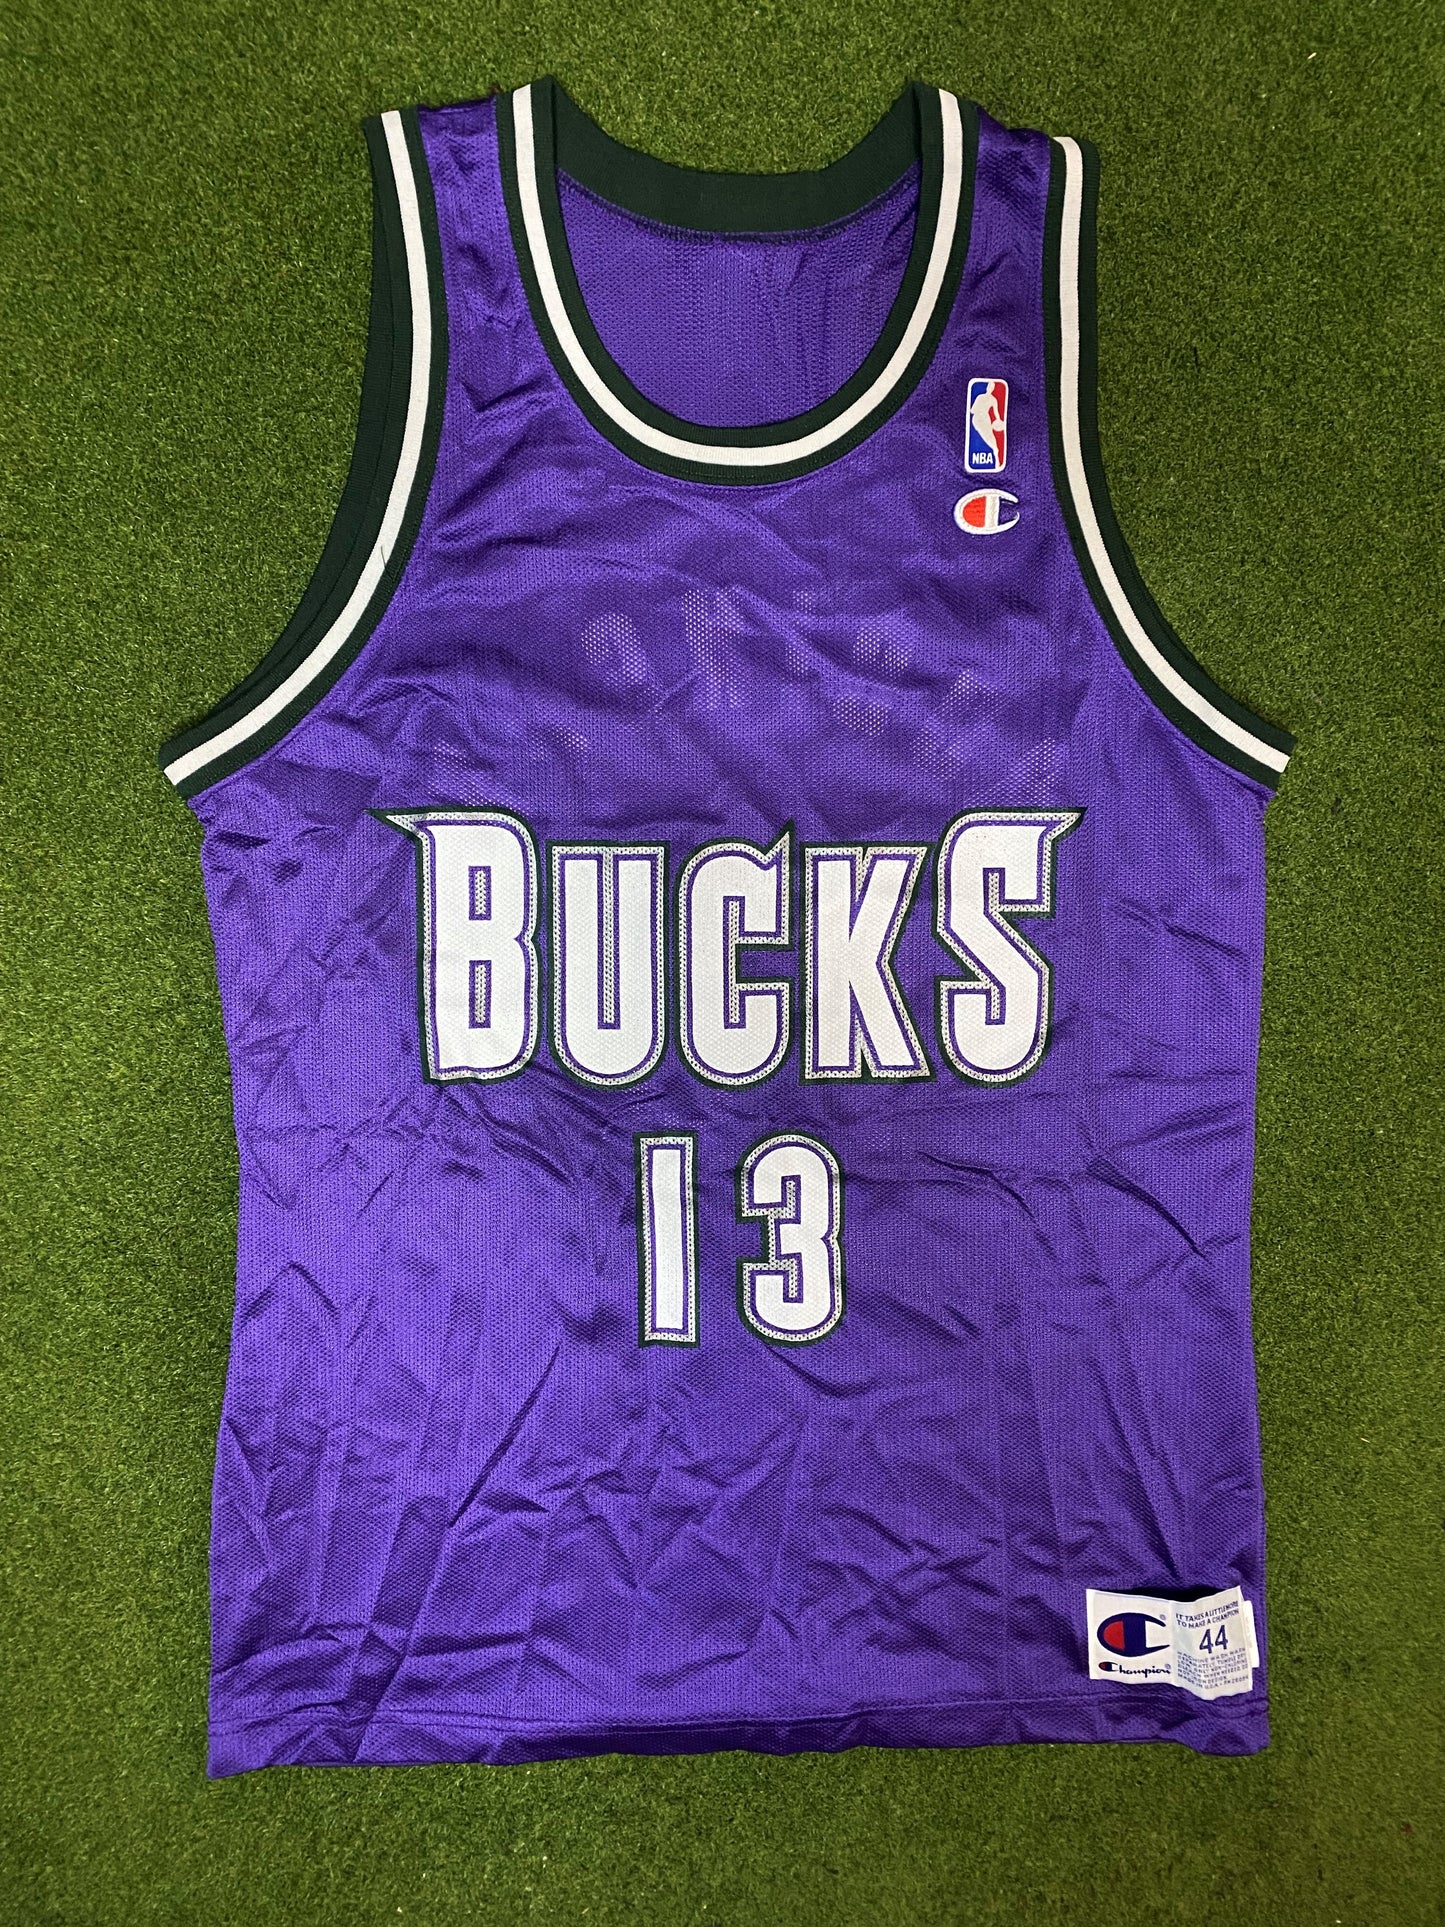 90s Milwaukee Bucks - Glenn Robinson #13 - Champion - Vintage NBA Jersey (44)